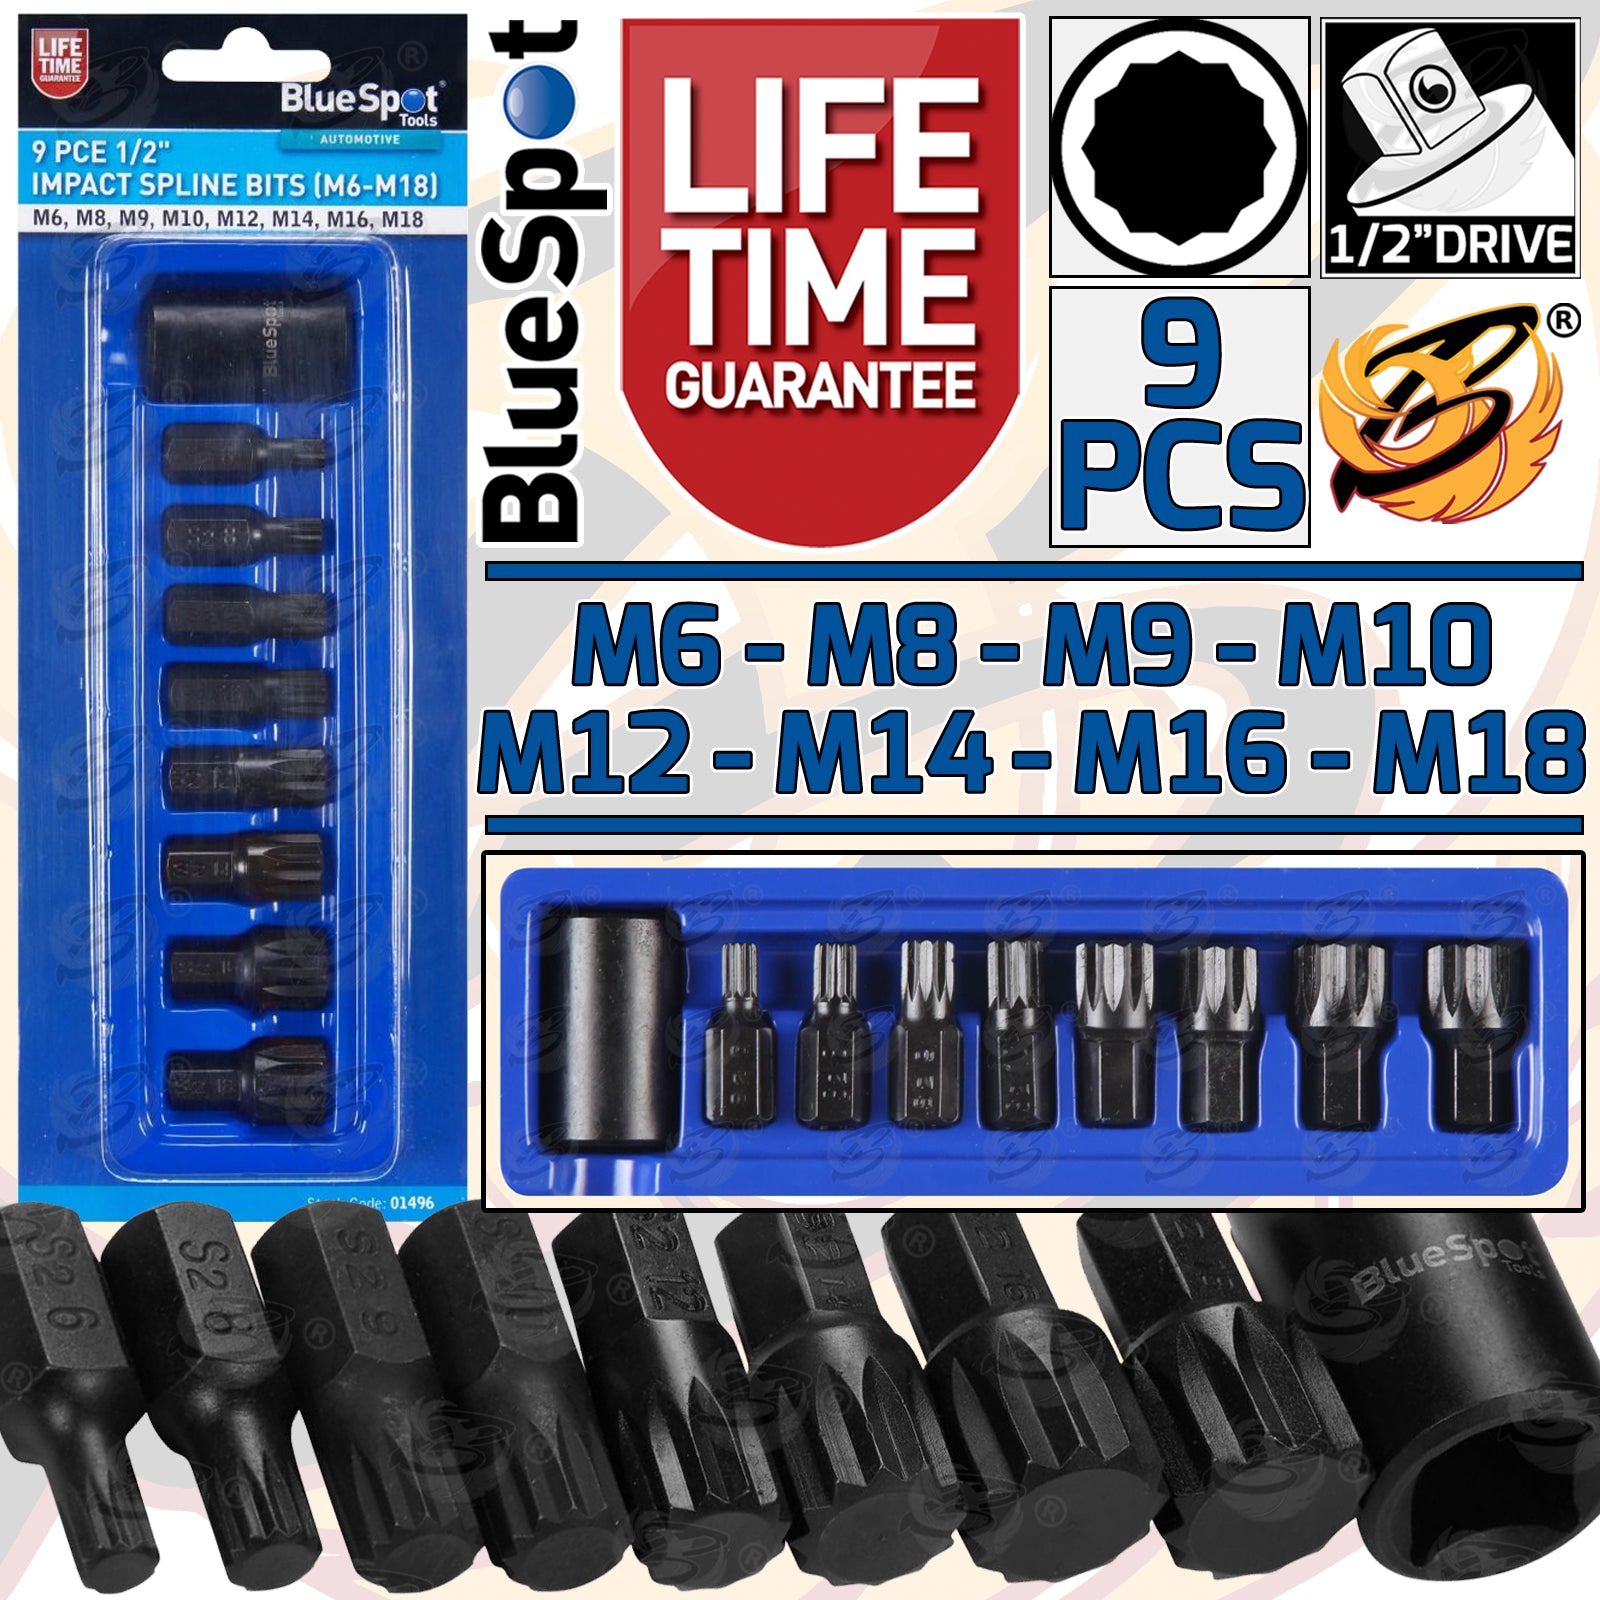 BLUESPOT 9PCS 1/2" DRIVE IMPACT SPLINE BIT SOCKETS M6 - M18